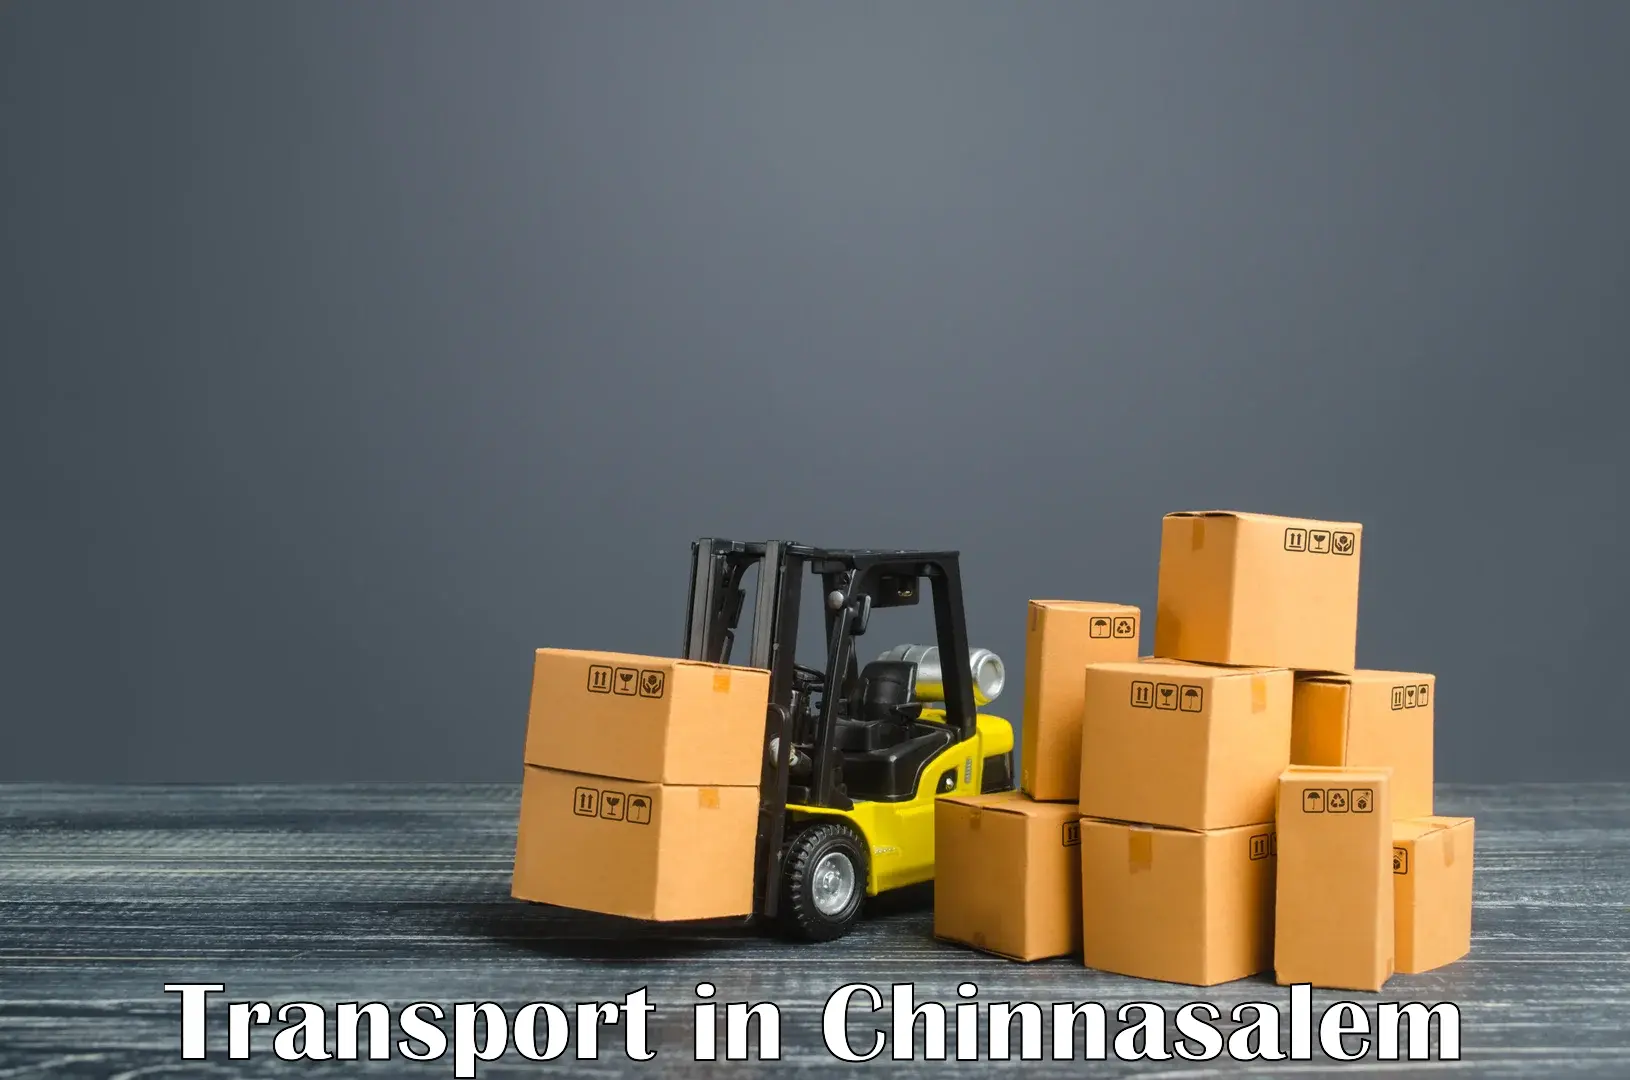 Transportation services in Chinnasalem